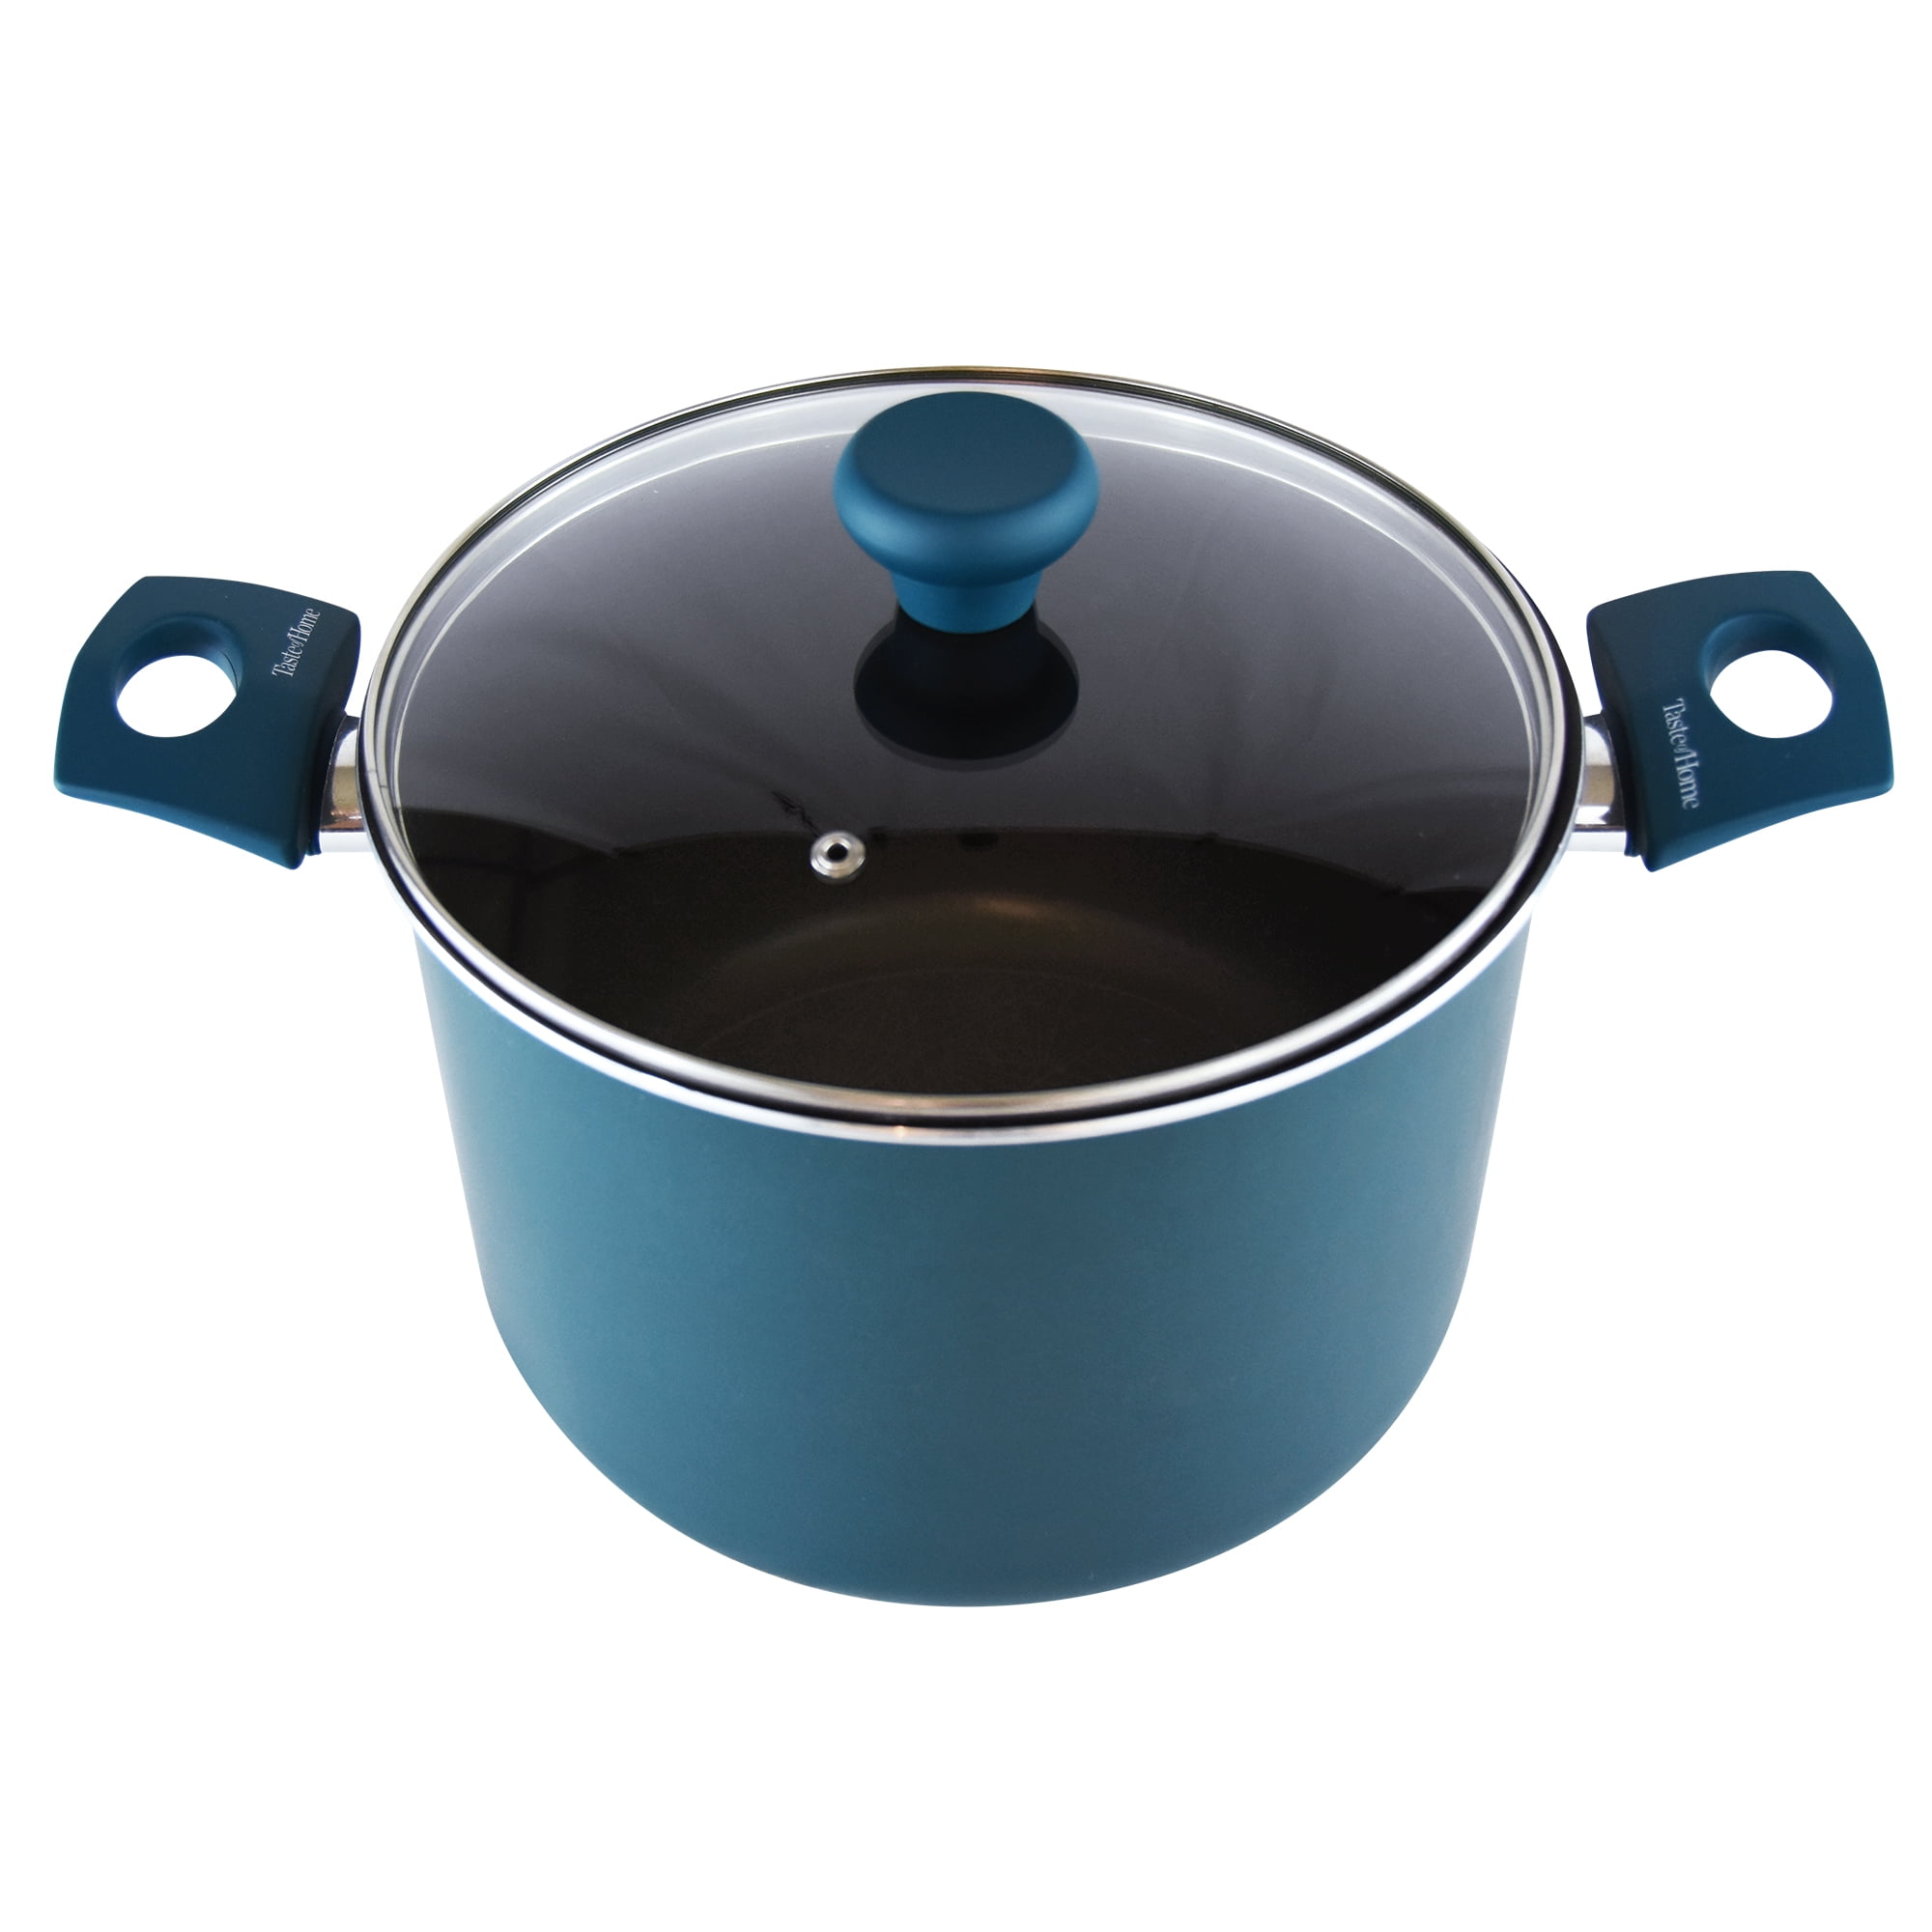  MNHW Non Stick Aluminum Sauce/Stock Pot With Glass Lid 8 Quart,  Black Cooking pot Soup pot Steam pot Big pots for cooking Large pot for  cooking Cooking pots with lids Kitchen